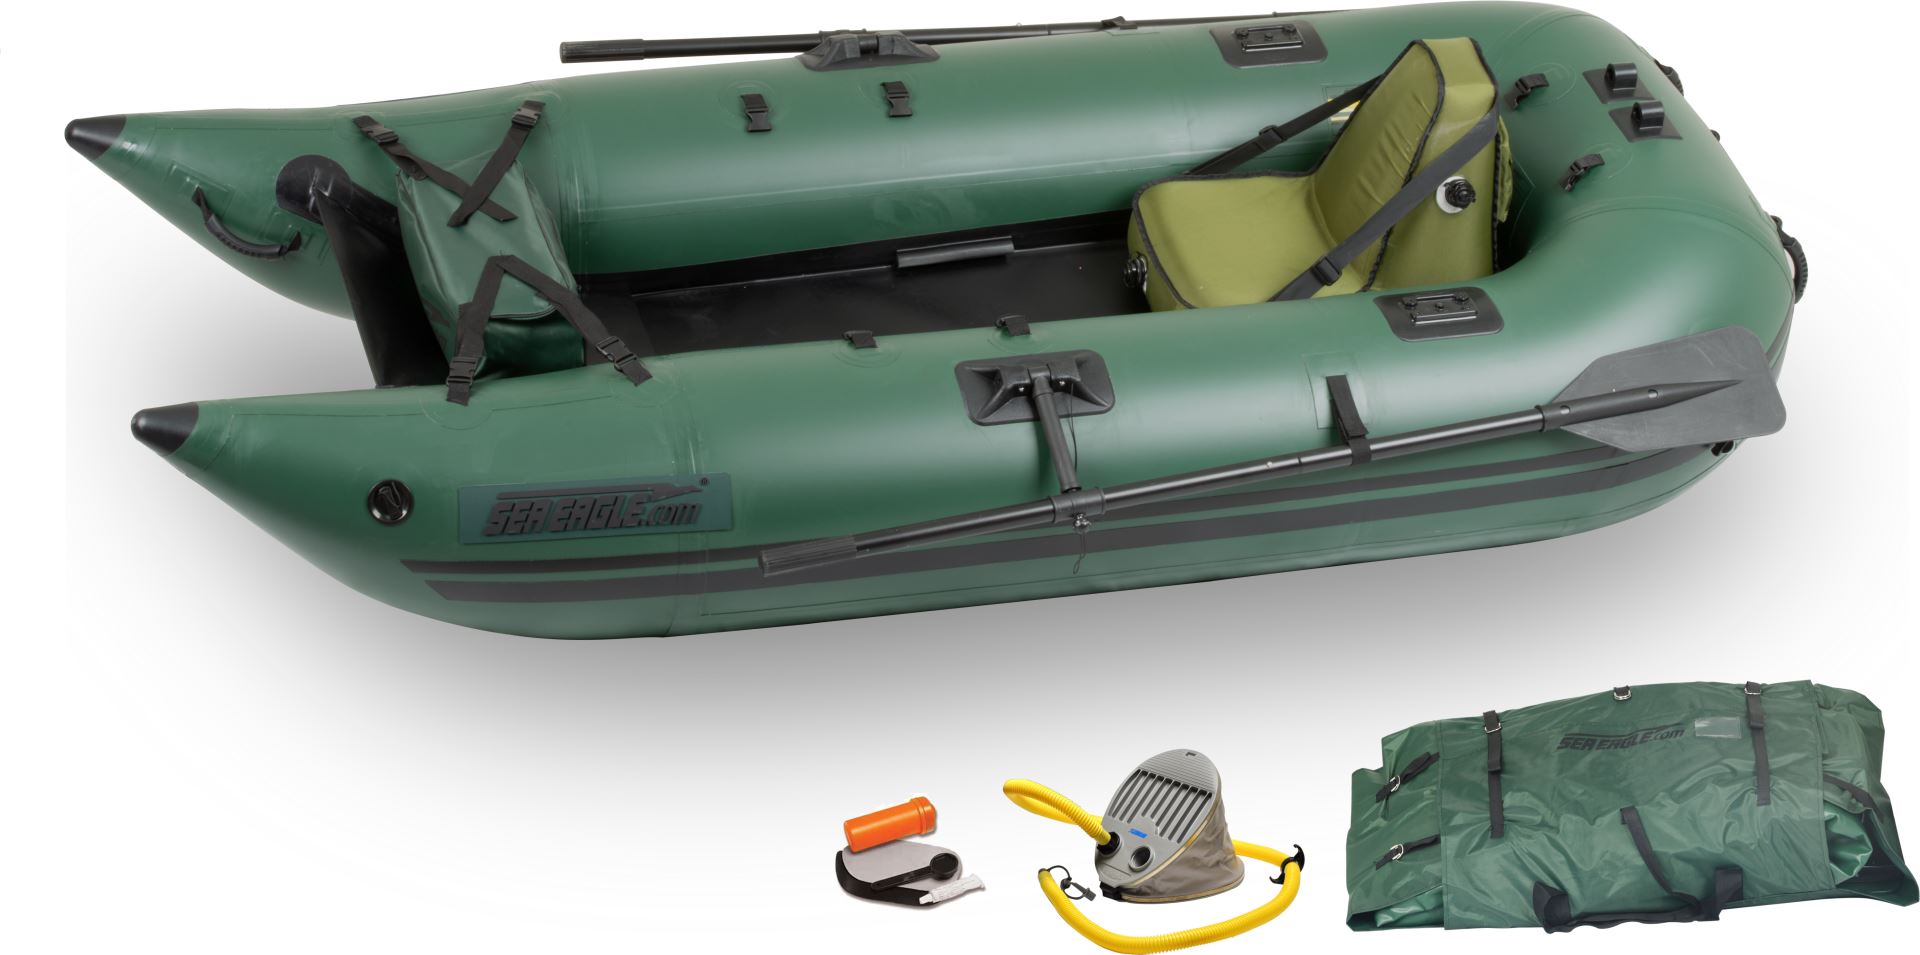 Sea Eagle 285fpb Inflatable Pontoon Fishing Boat - Splashy McFun